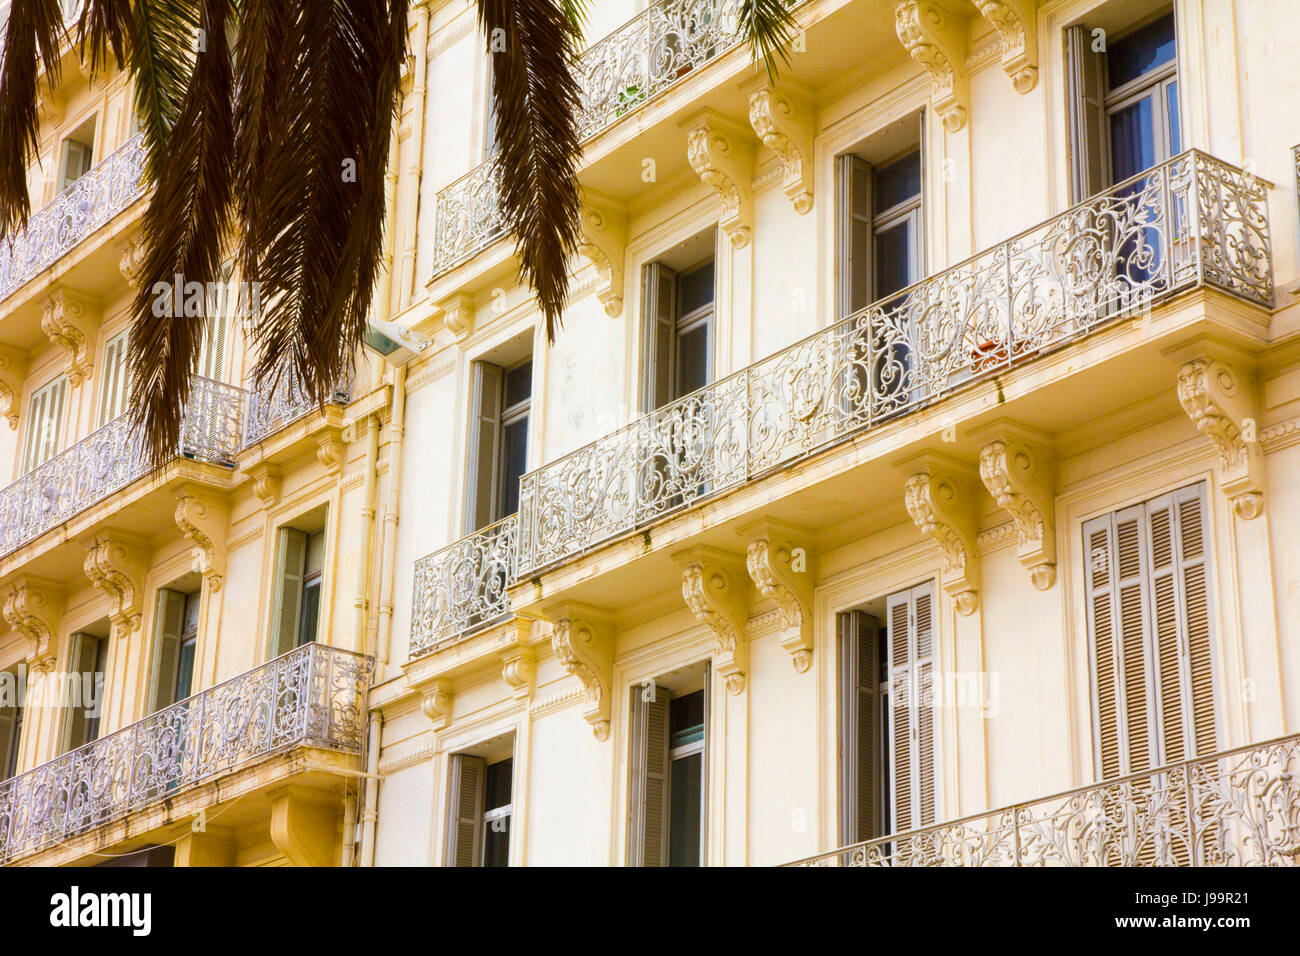 Toulon est la plupart du 19e siècle l'architecture urbaine reflète une variété de styles y compris néoclassique, Second Empire, Beaux Arts et Art Nouveau. Toulo Banque D'Images